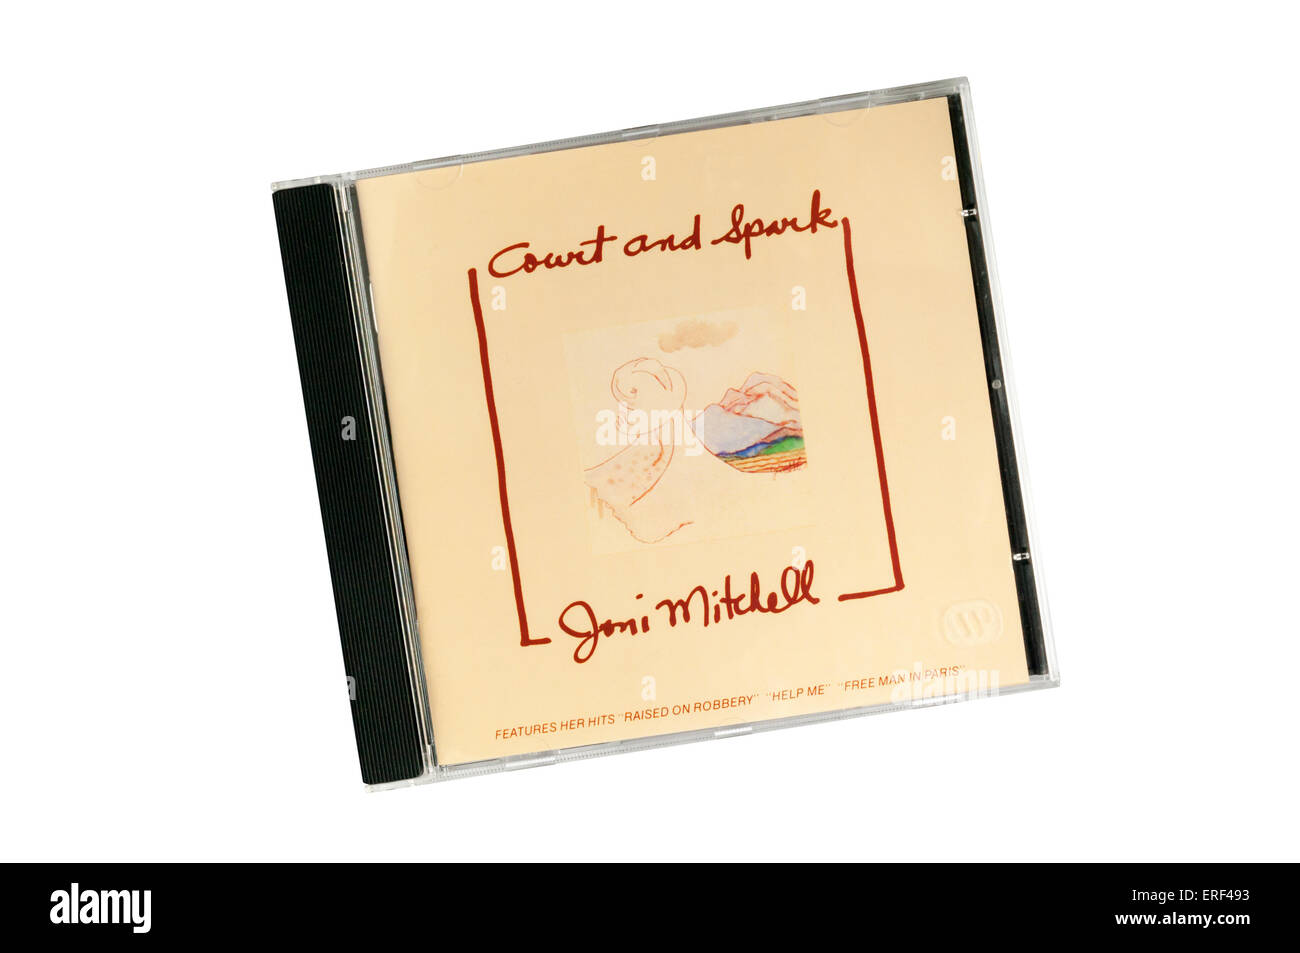 Corte e la scintilla è stato un 1974 album dal canadese cantautrice Joni Mitchell. È la sua più album di successo. Foto Stock